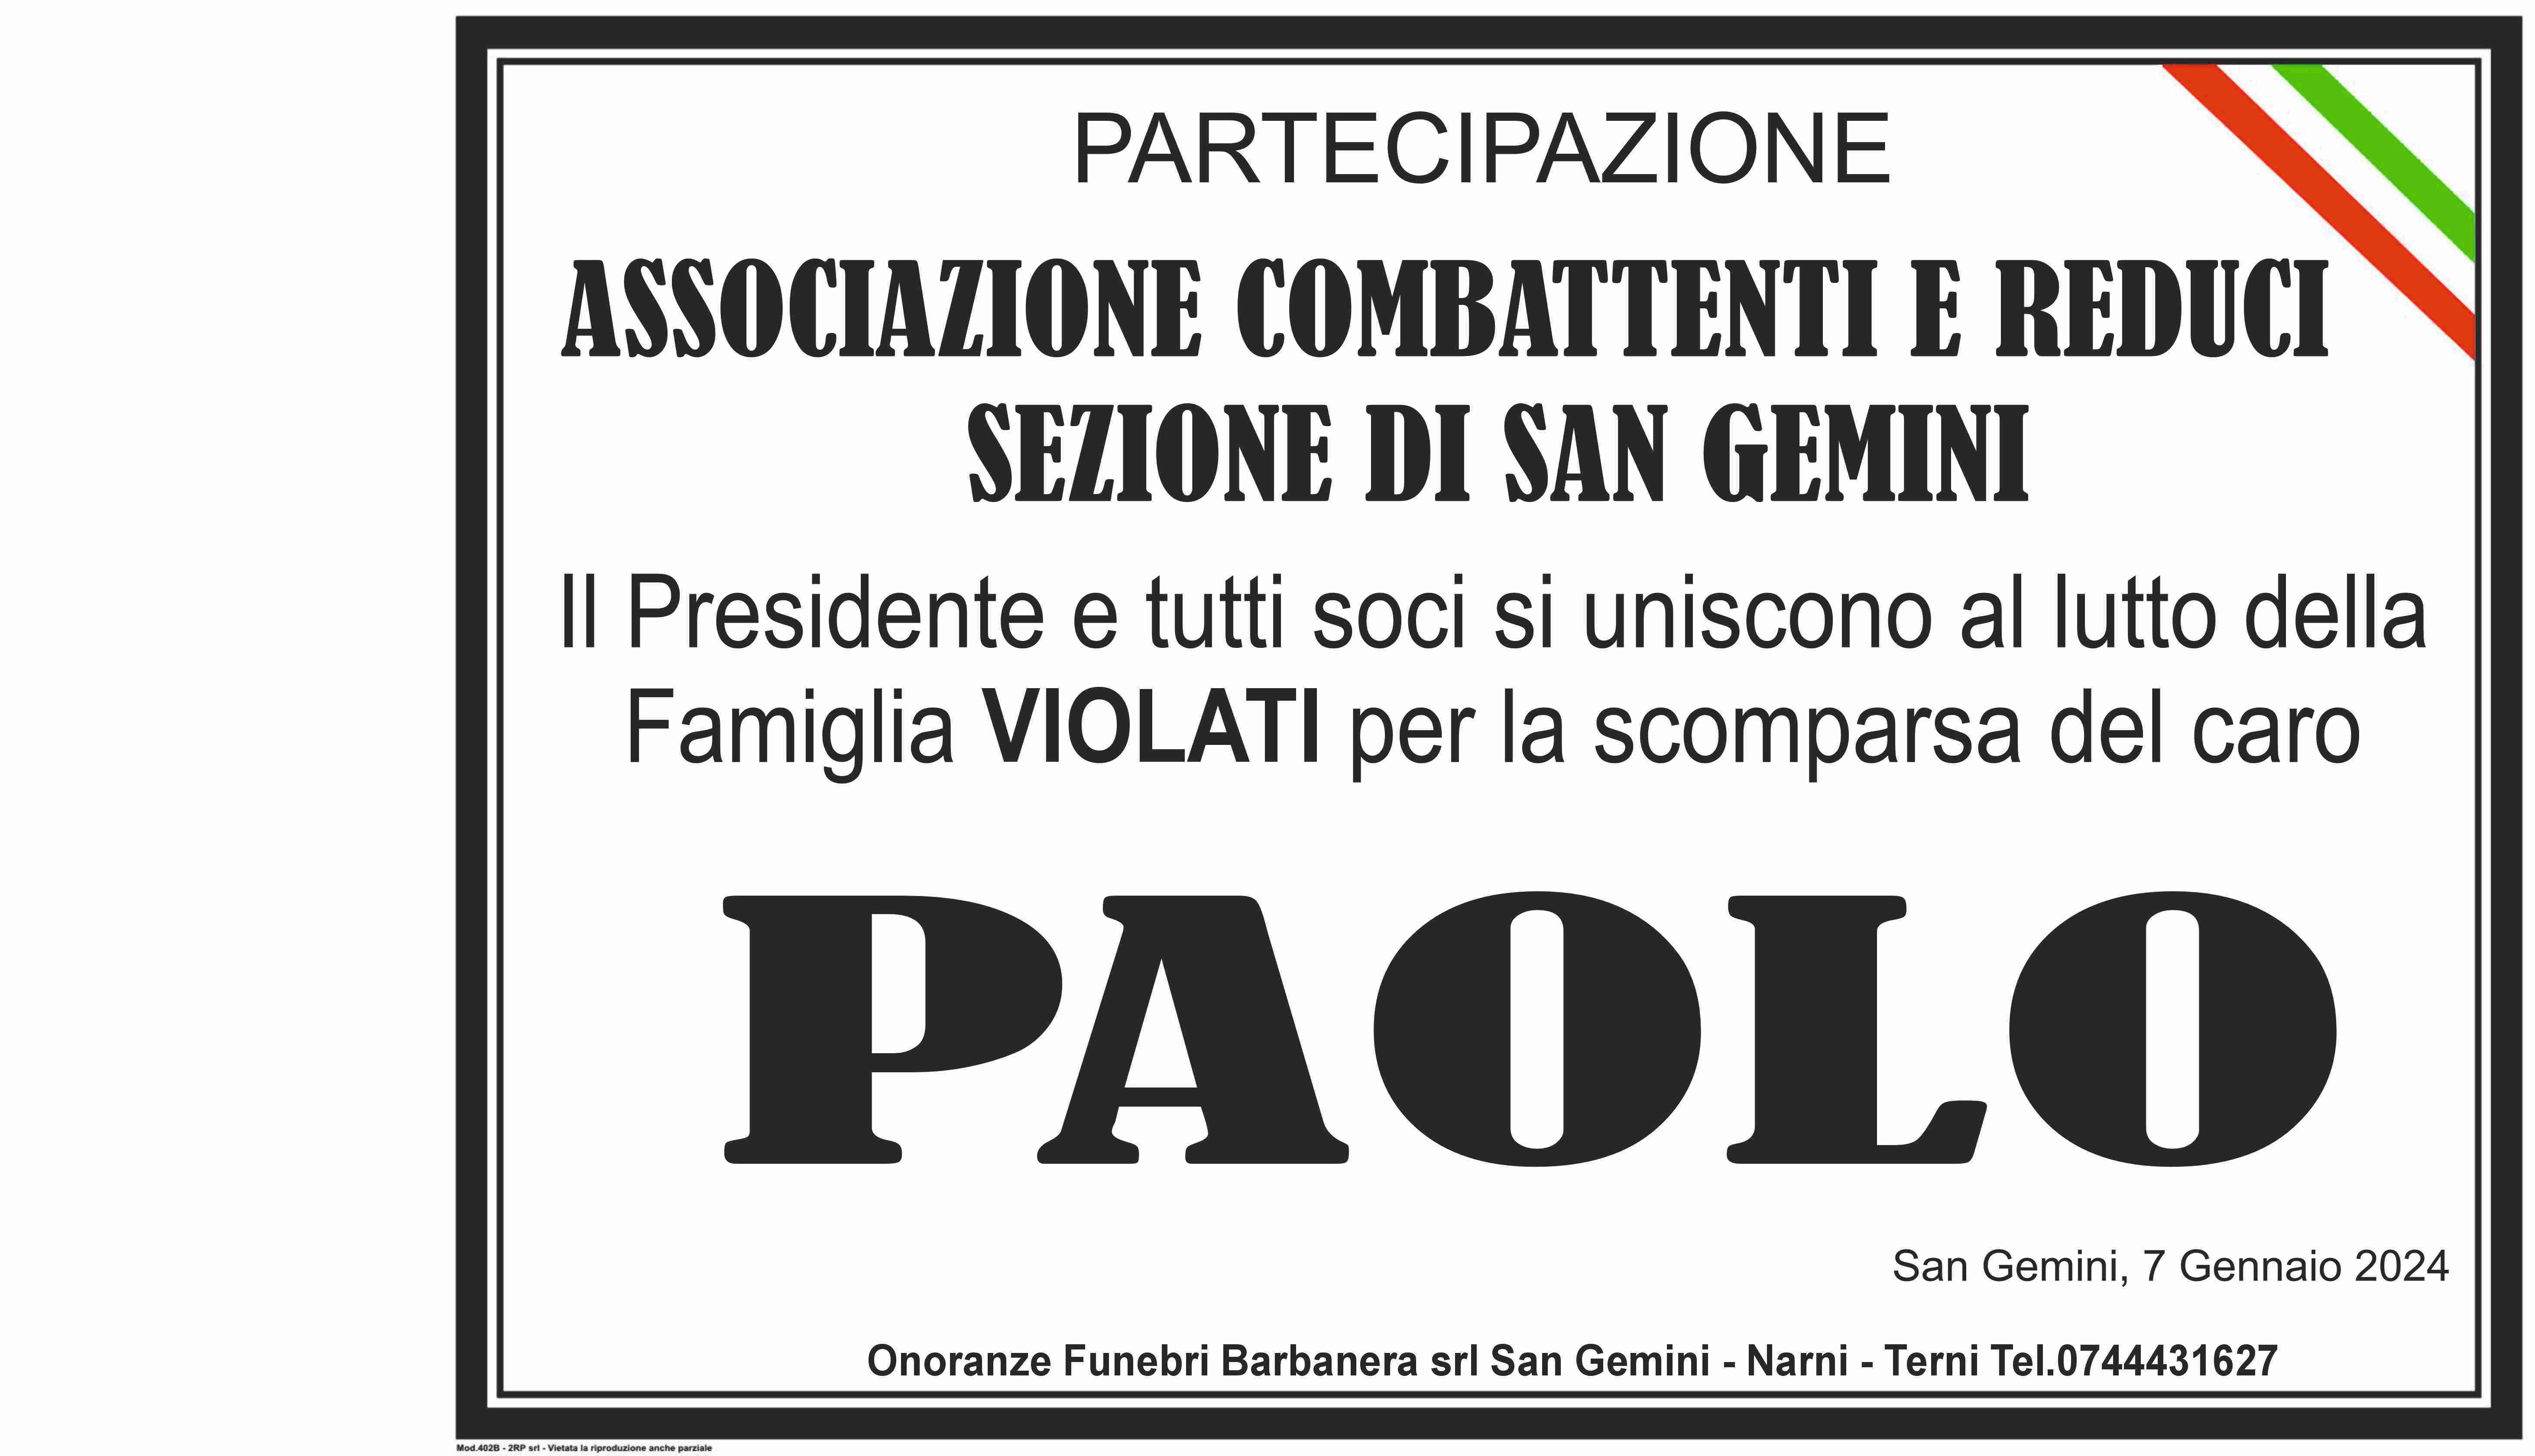 Paolo Violati